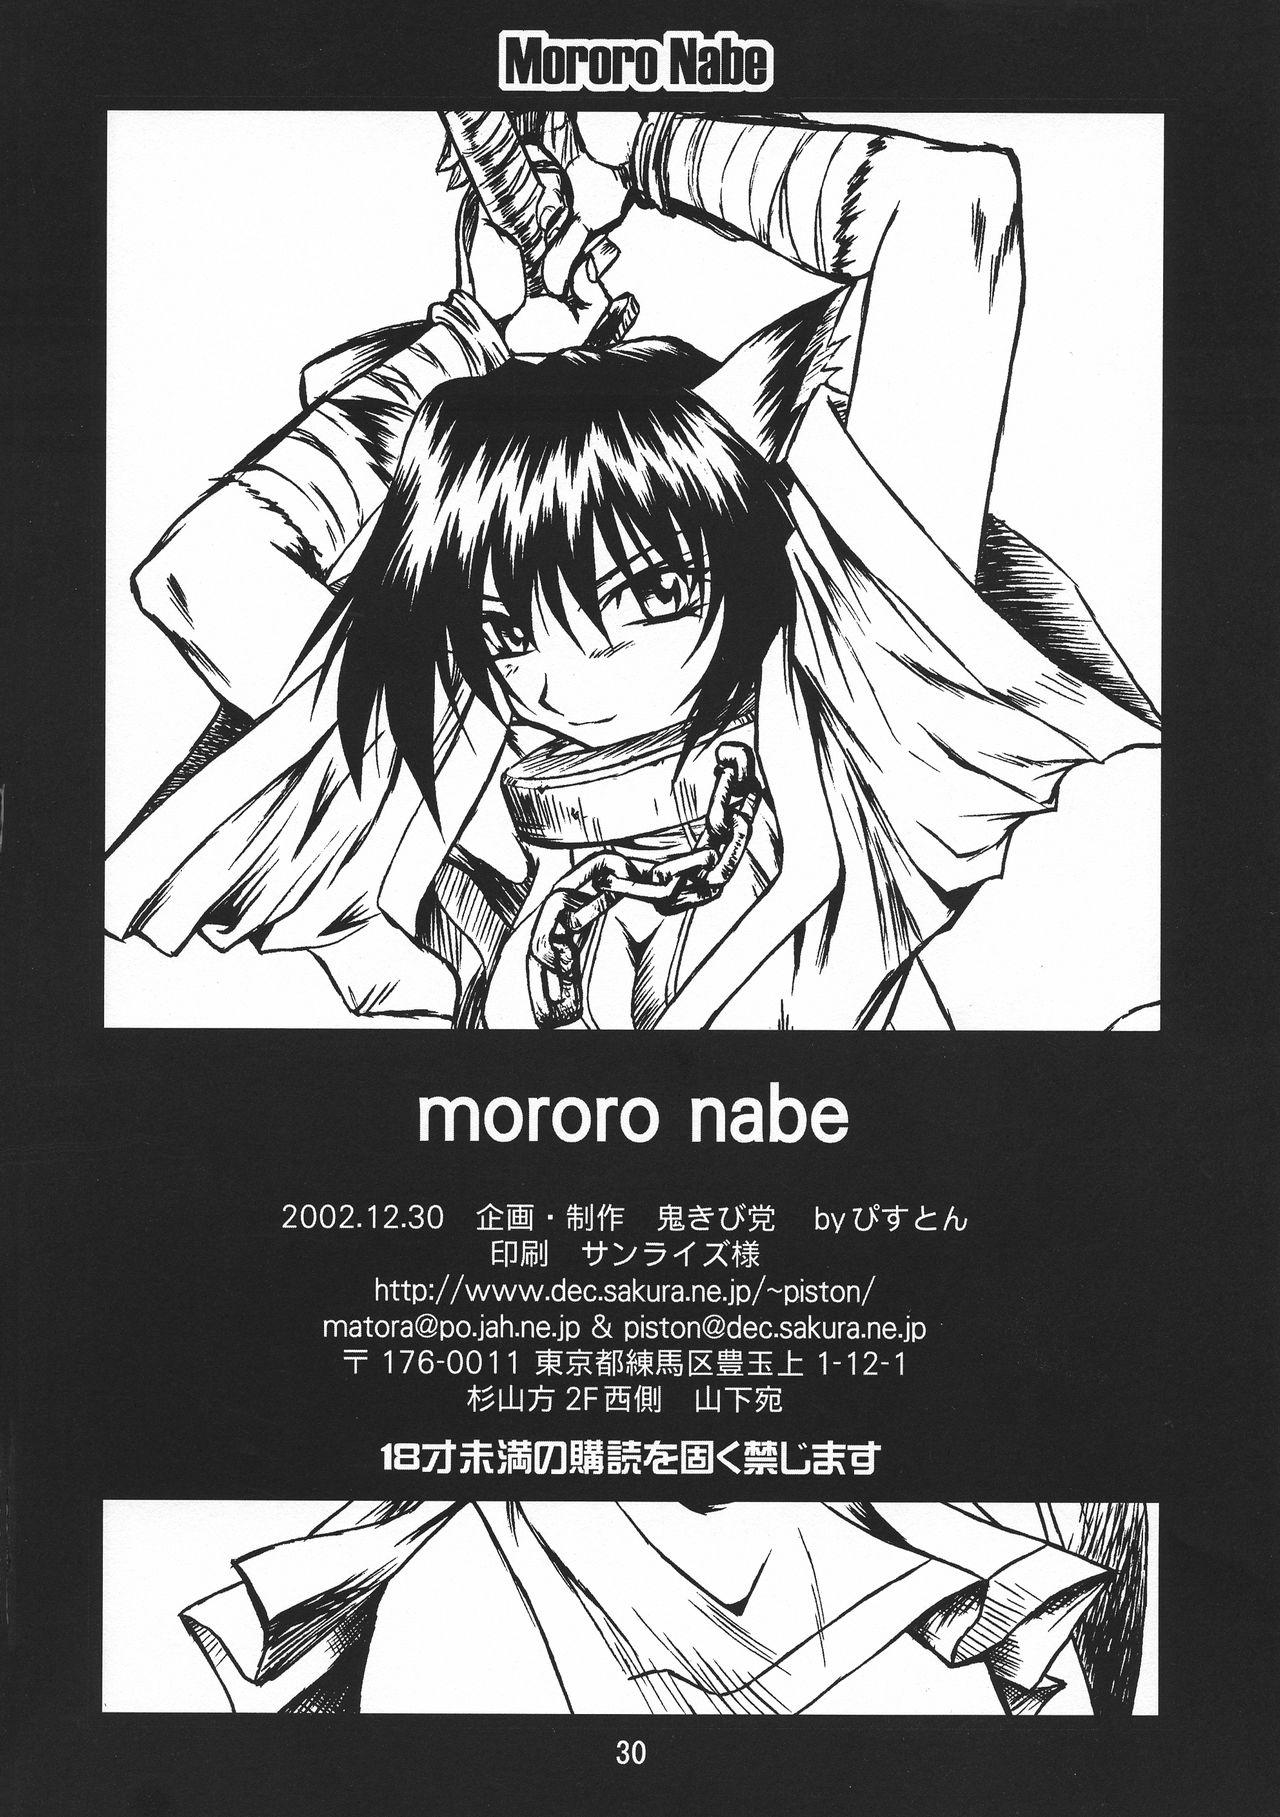 Petite Teenager Mororo Nabe - Utawarerumono Exhib - Page 30